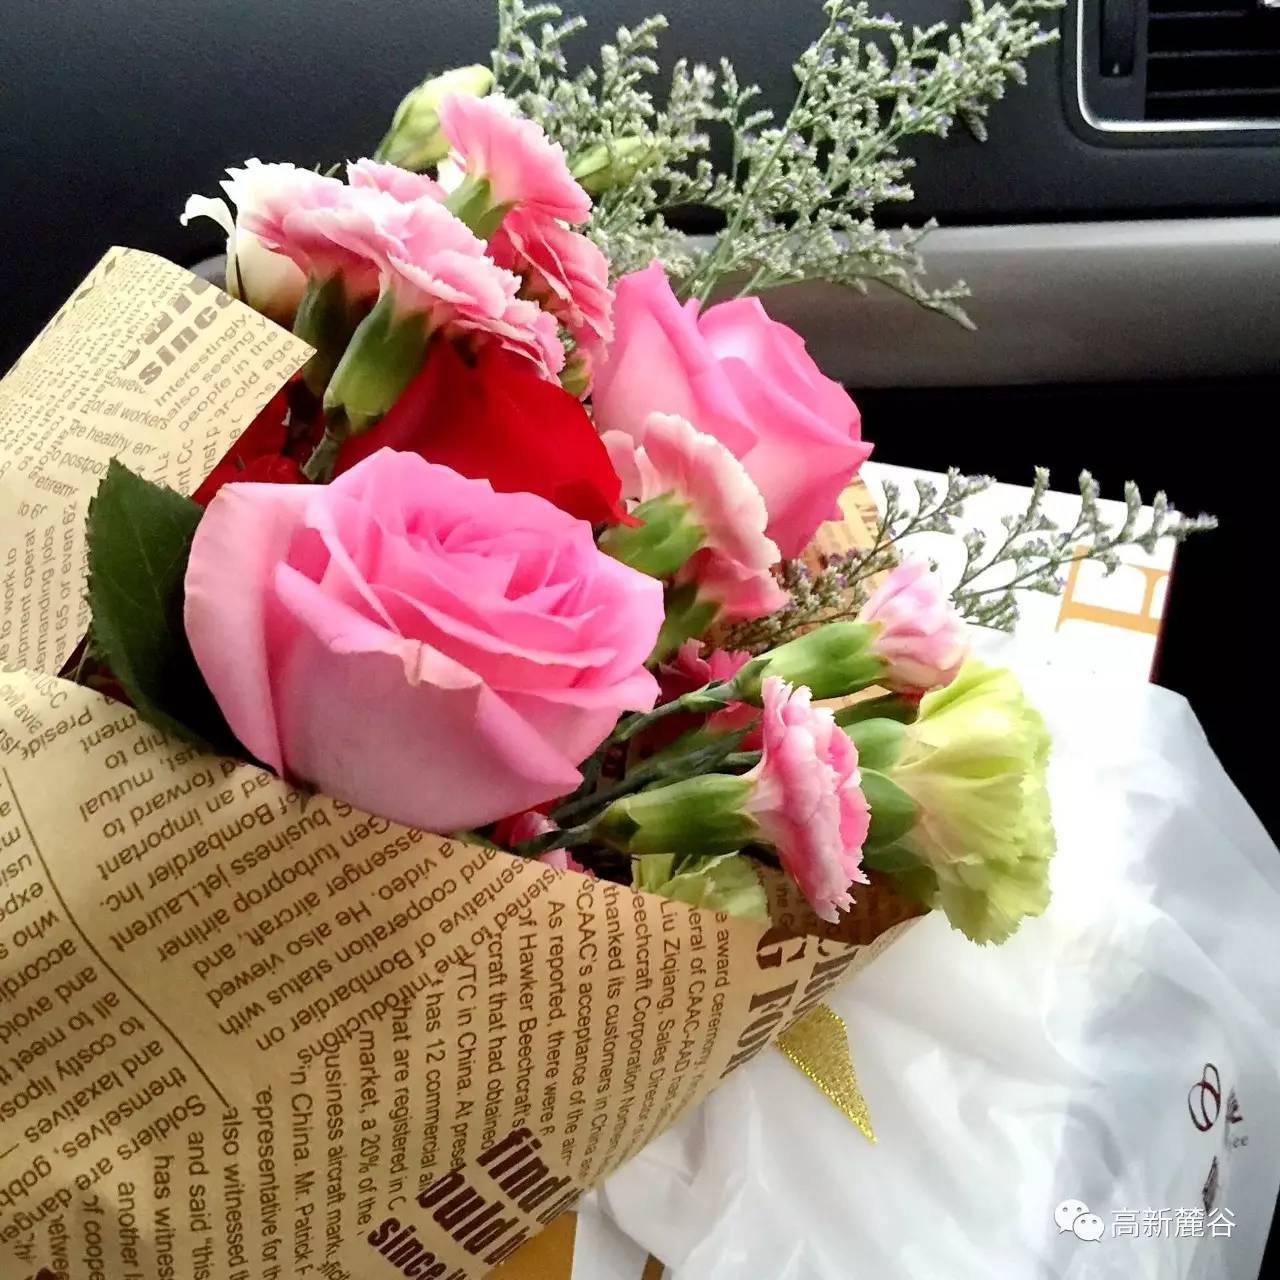 你想每周都有人给你送花吗?只需要